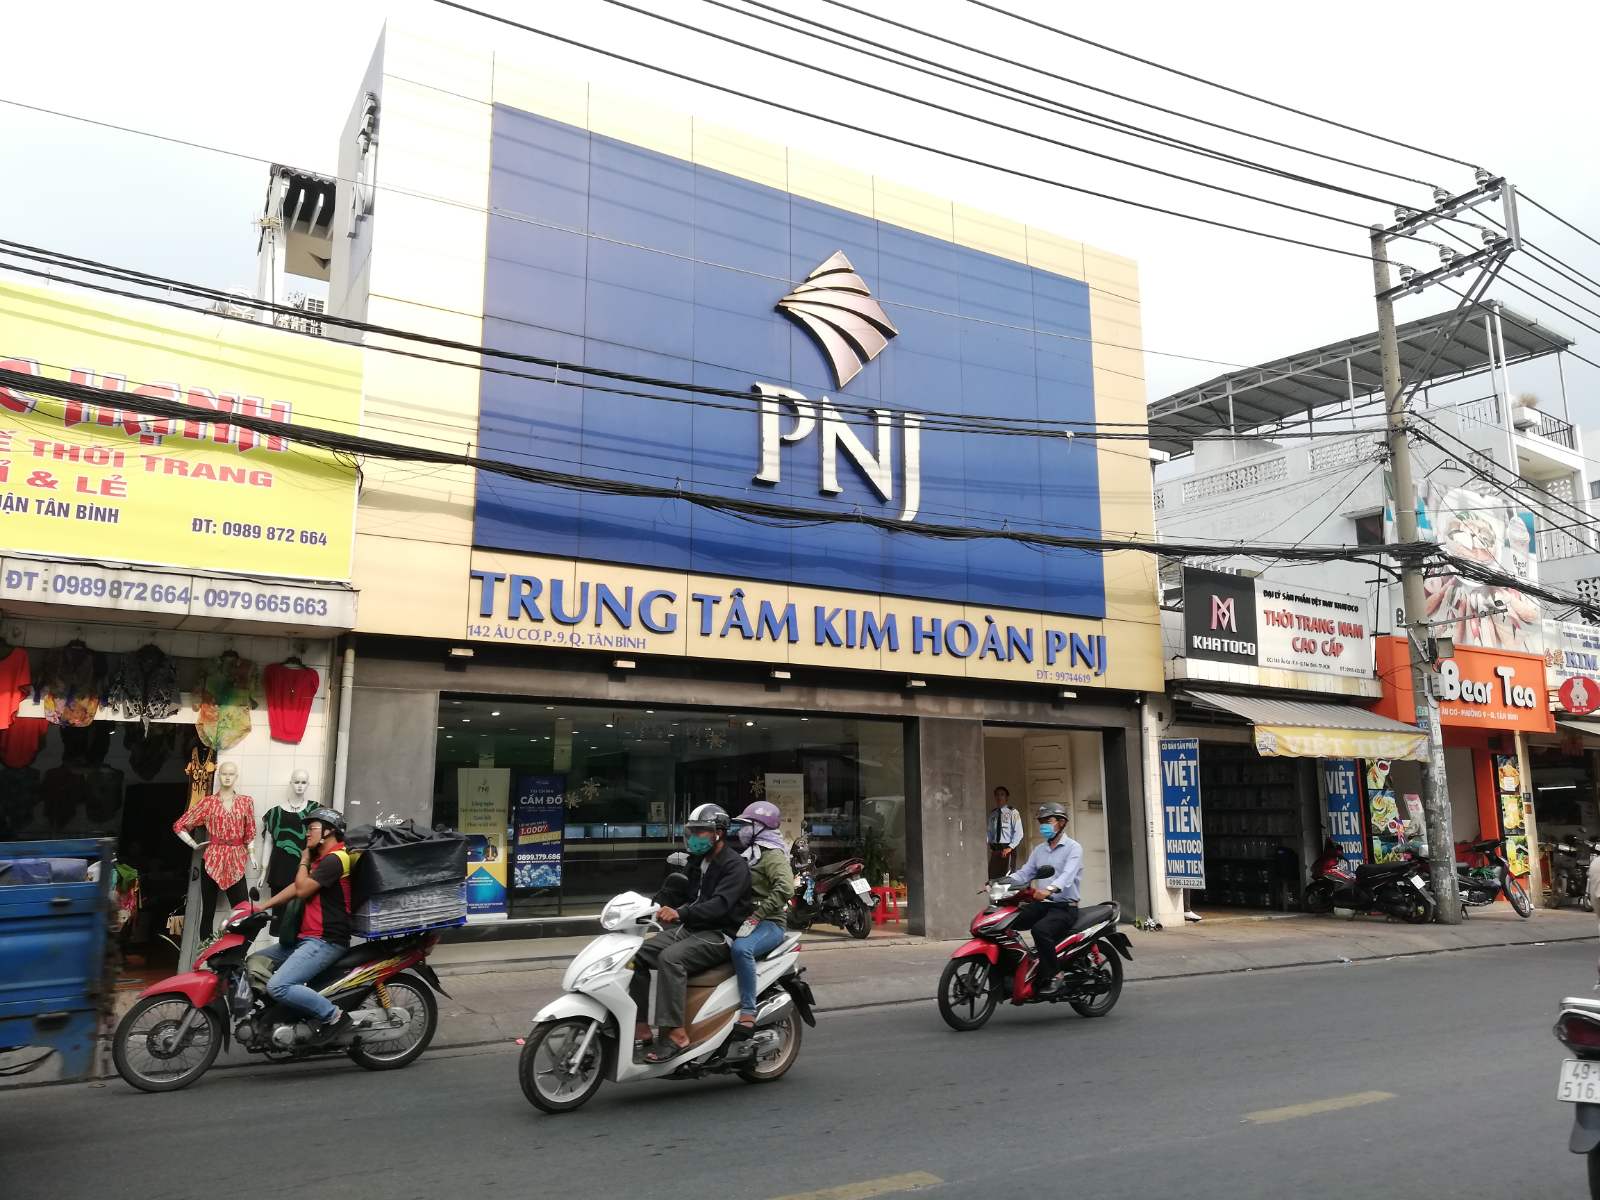 SP duy nhất - MT thương hiệu - Huỳnh Văn Bánh, Q. PN (12 x 25m) 4 Tầng HĐT 200tr/th giá 77 tỷ